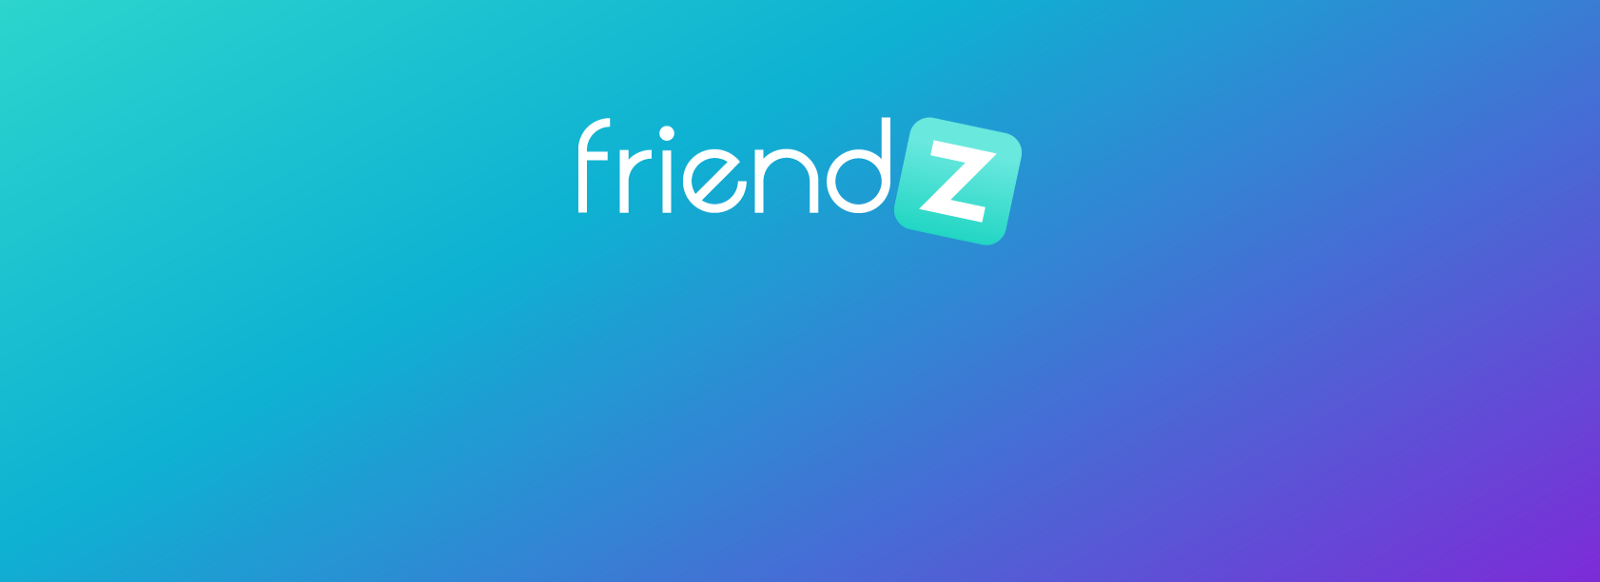 friendz-logo.png